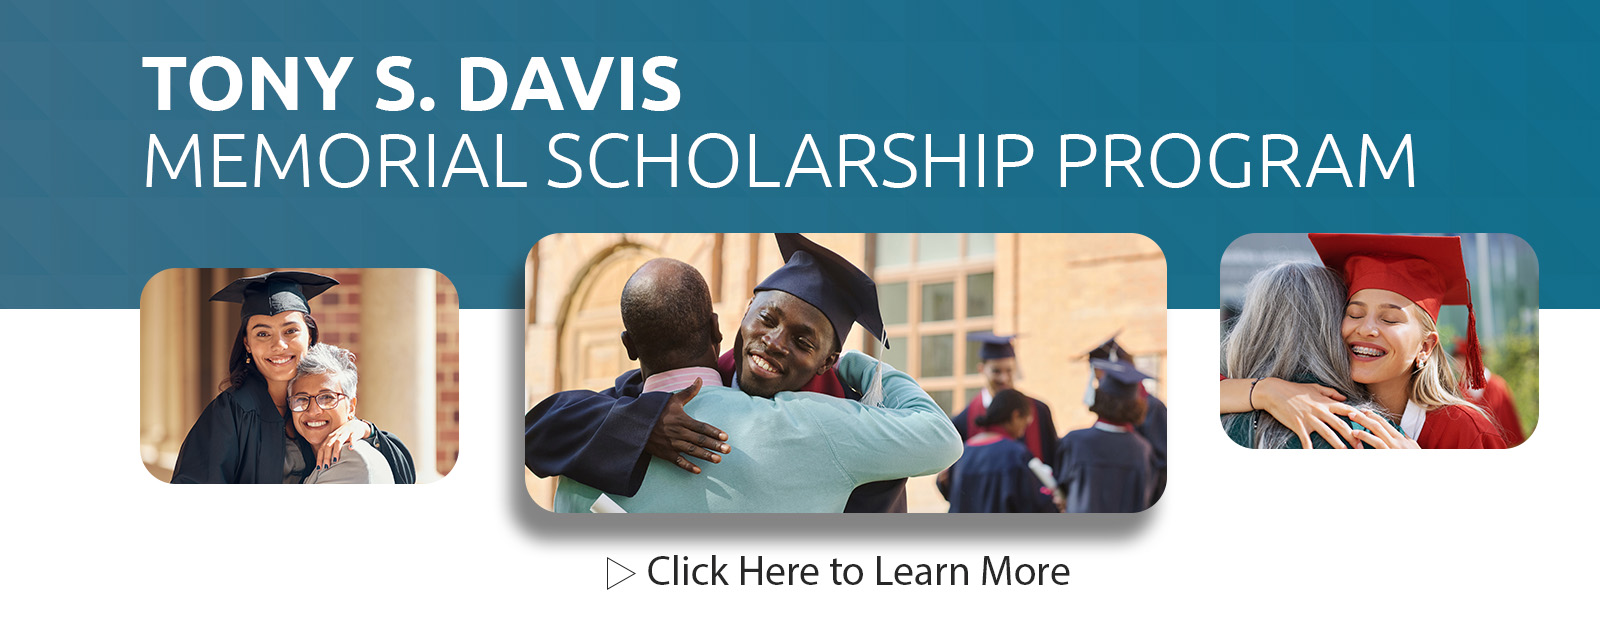 Tony S. Davis Scholarship